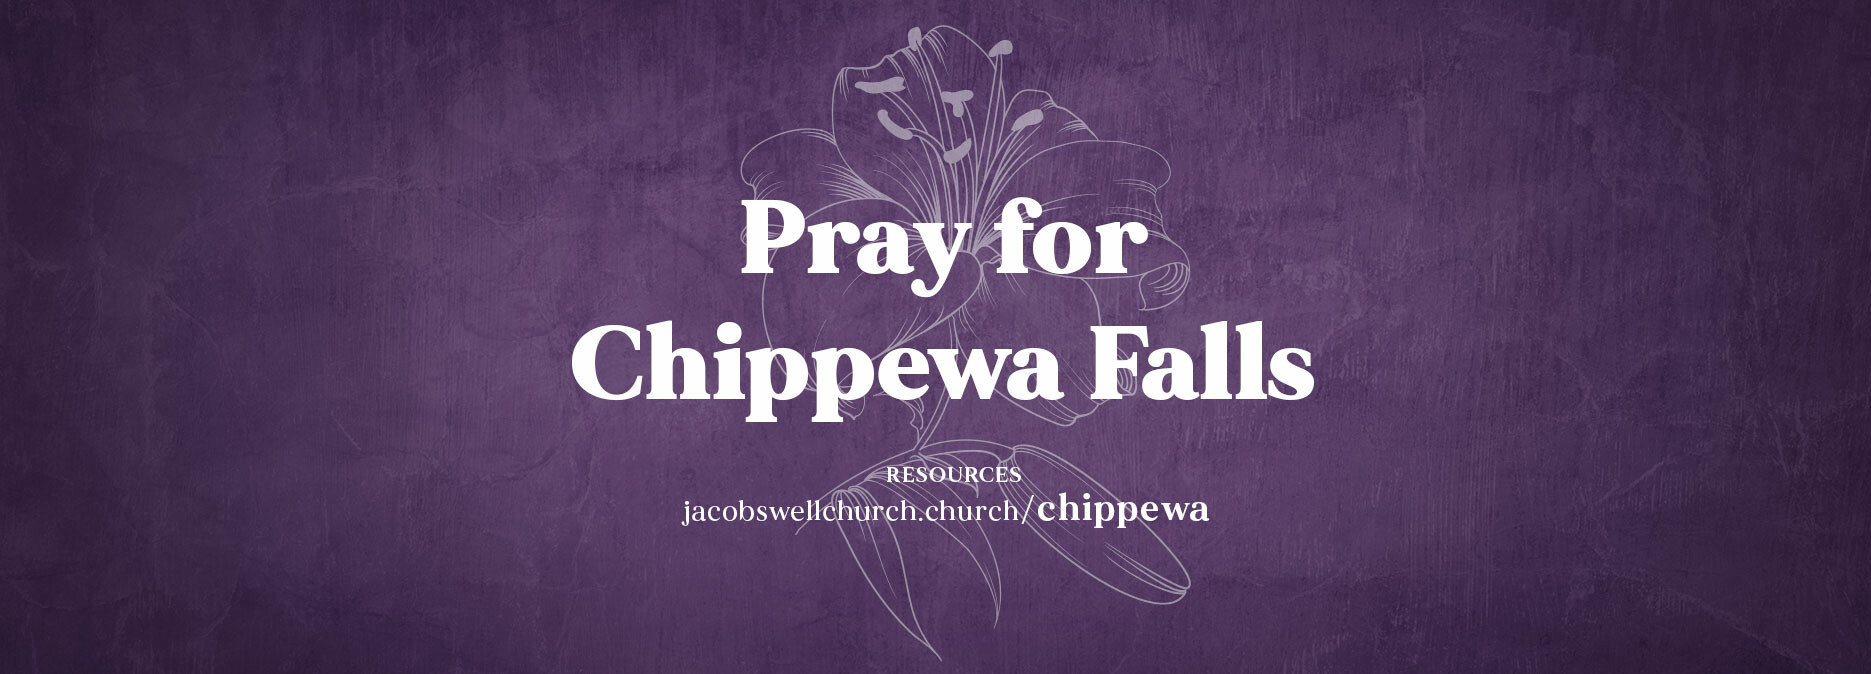 pray for chippewa